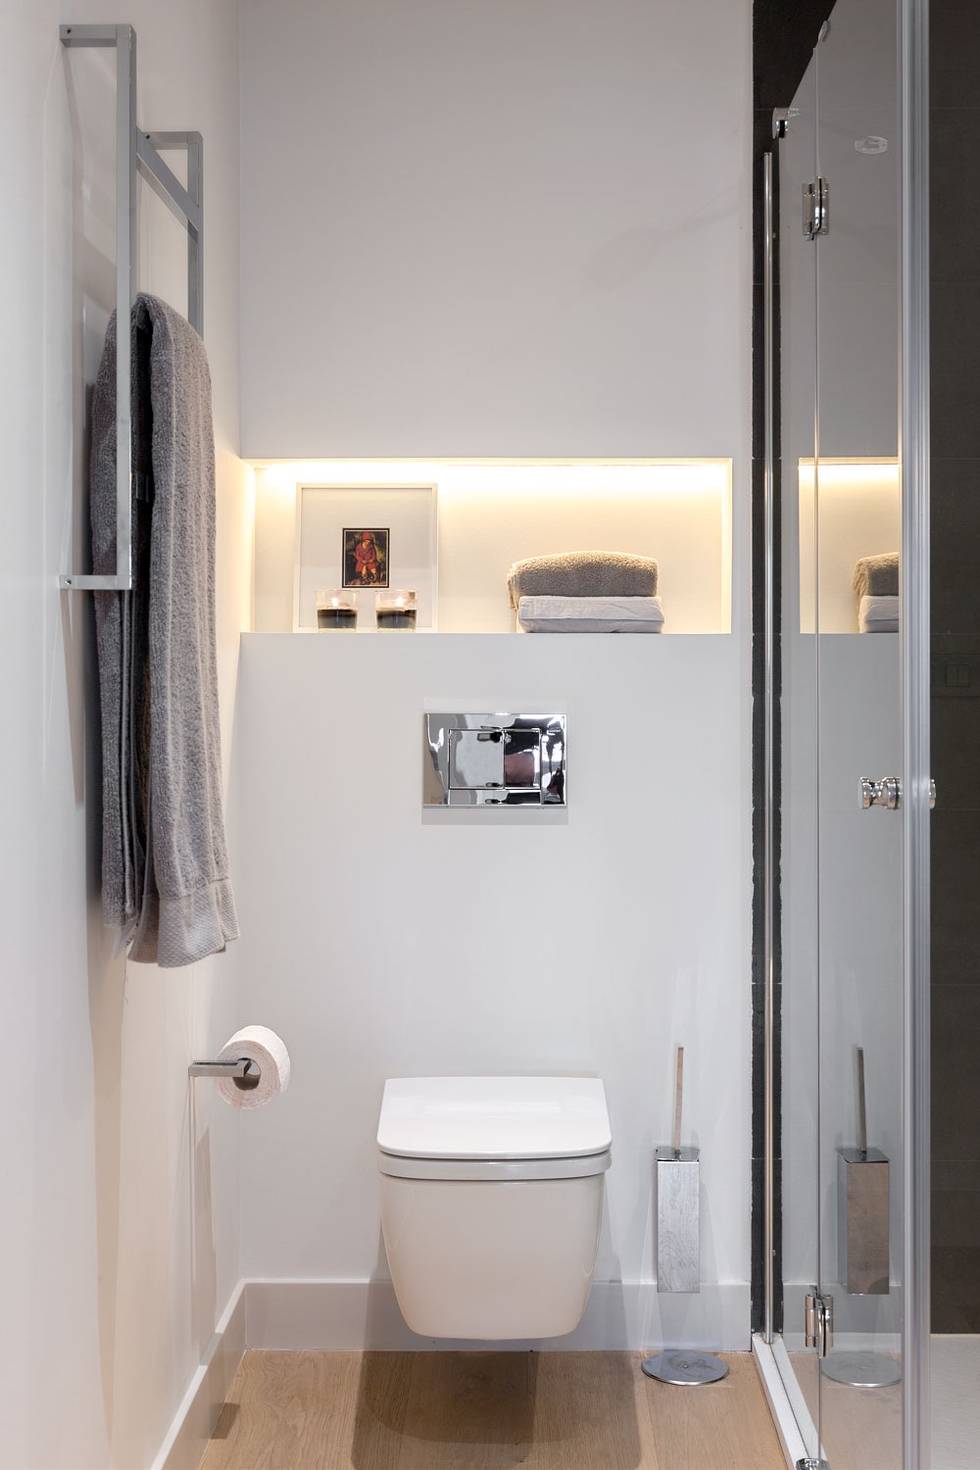 Трендовые идеи для дизайна ванной комнаты: 10 фото- фотографии
				